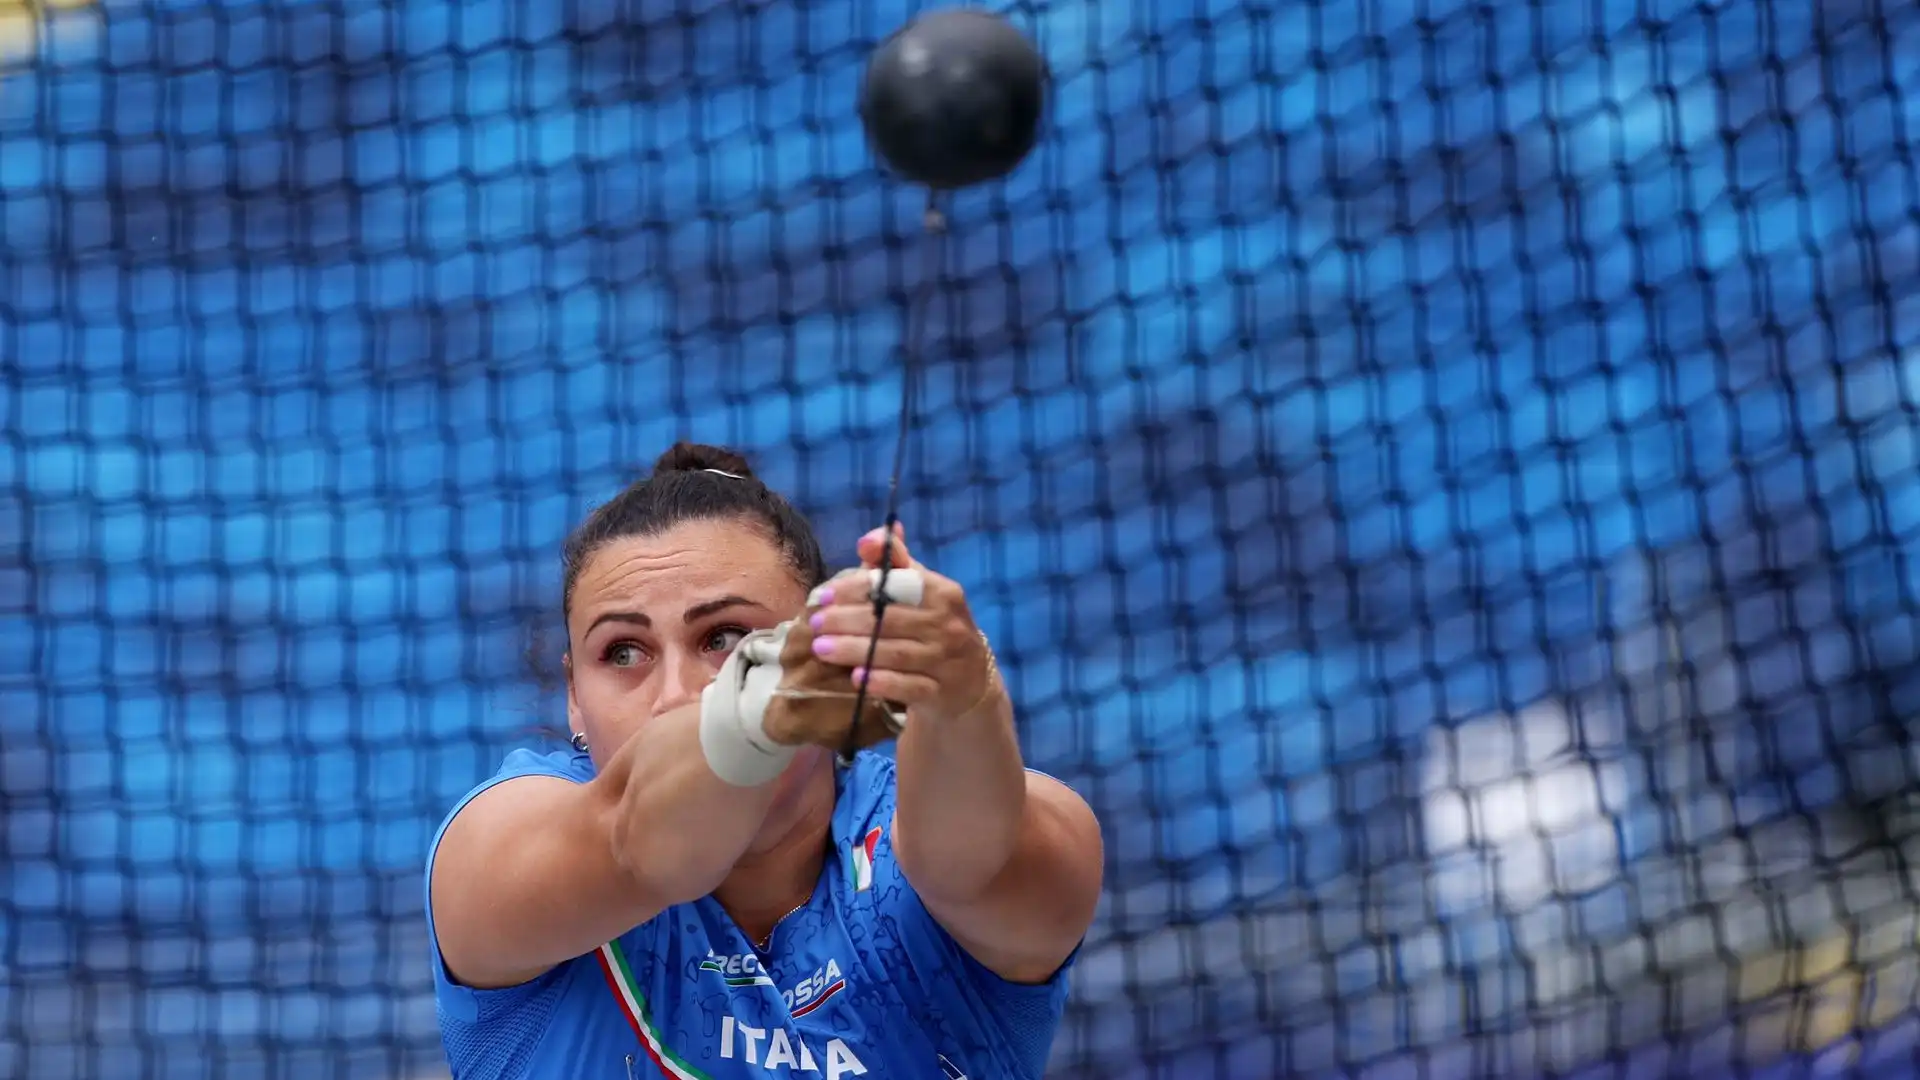 C'è anche Sara Fantini a gareggiare nel lancio del martello ai Giochi Europei